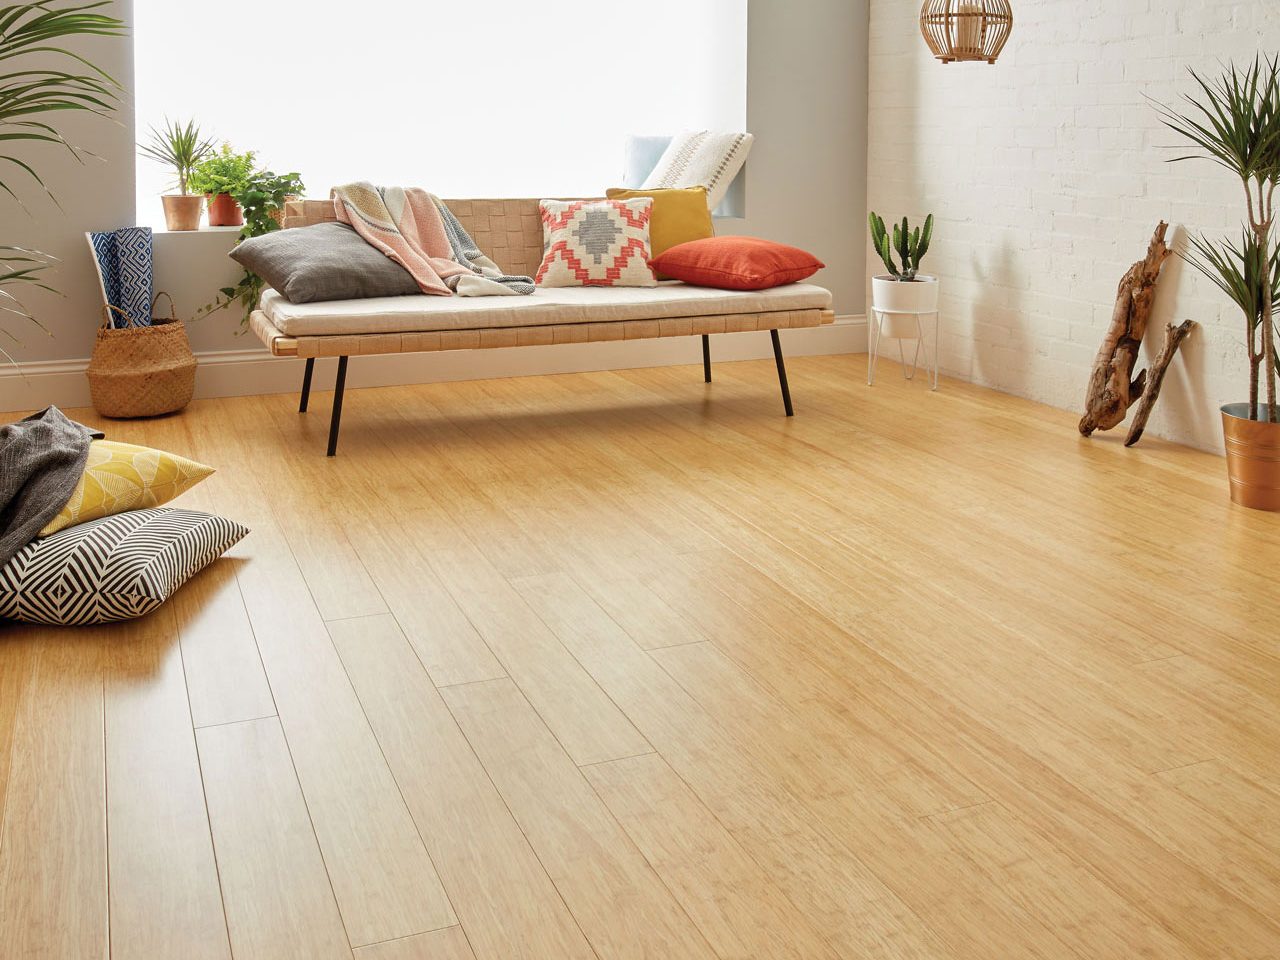 Sàn tre rẻ hơn và bền hơn so với các lựa chọn sàn gỗ khác 